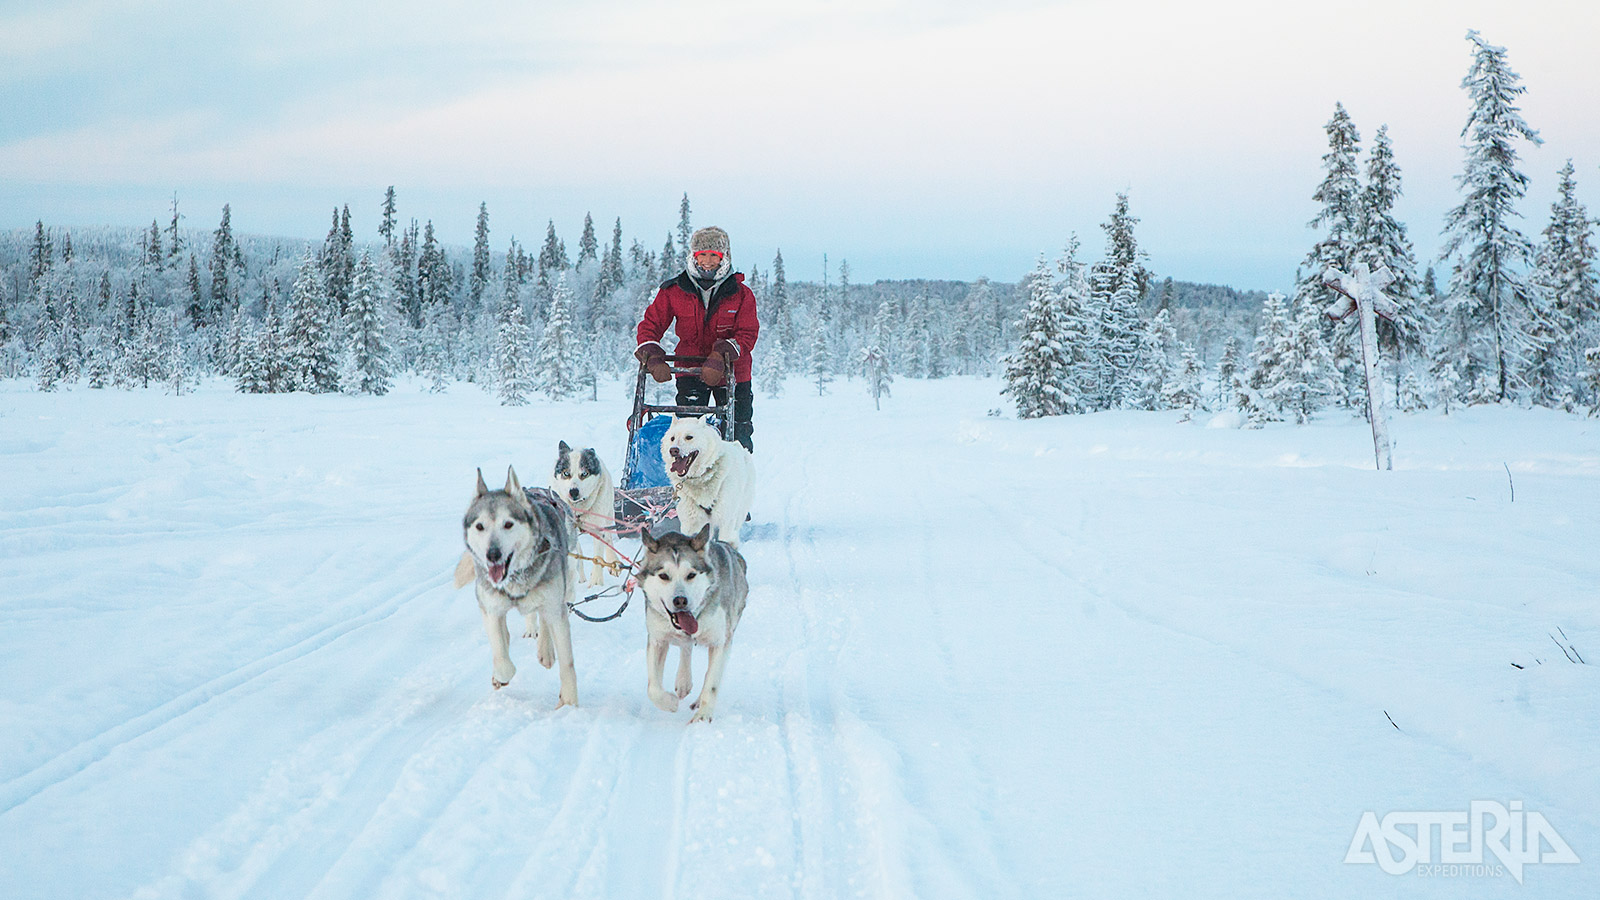 Trek de Finse natuur in met de je huskyslede